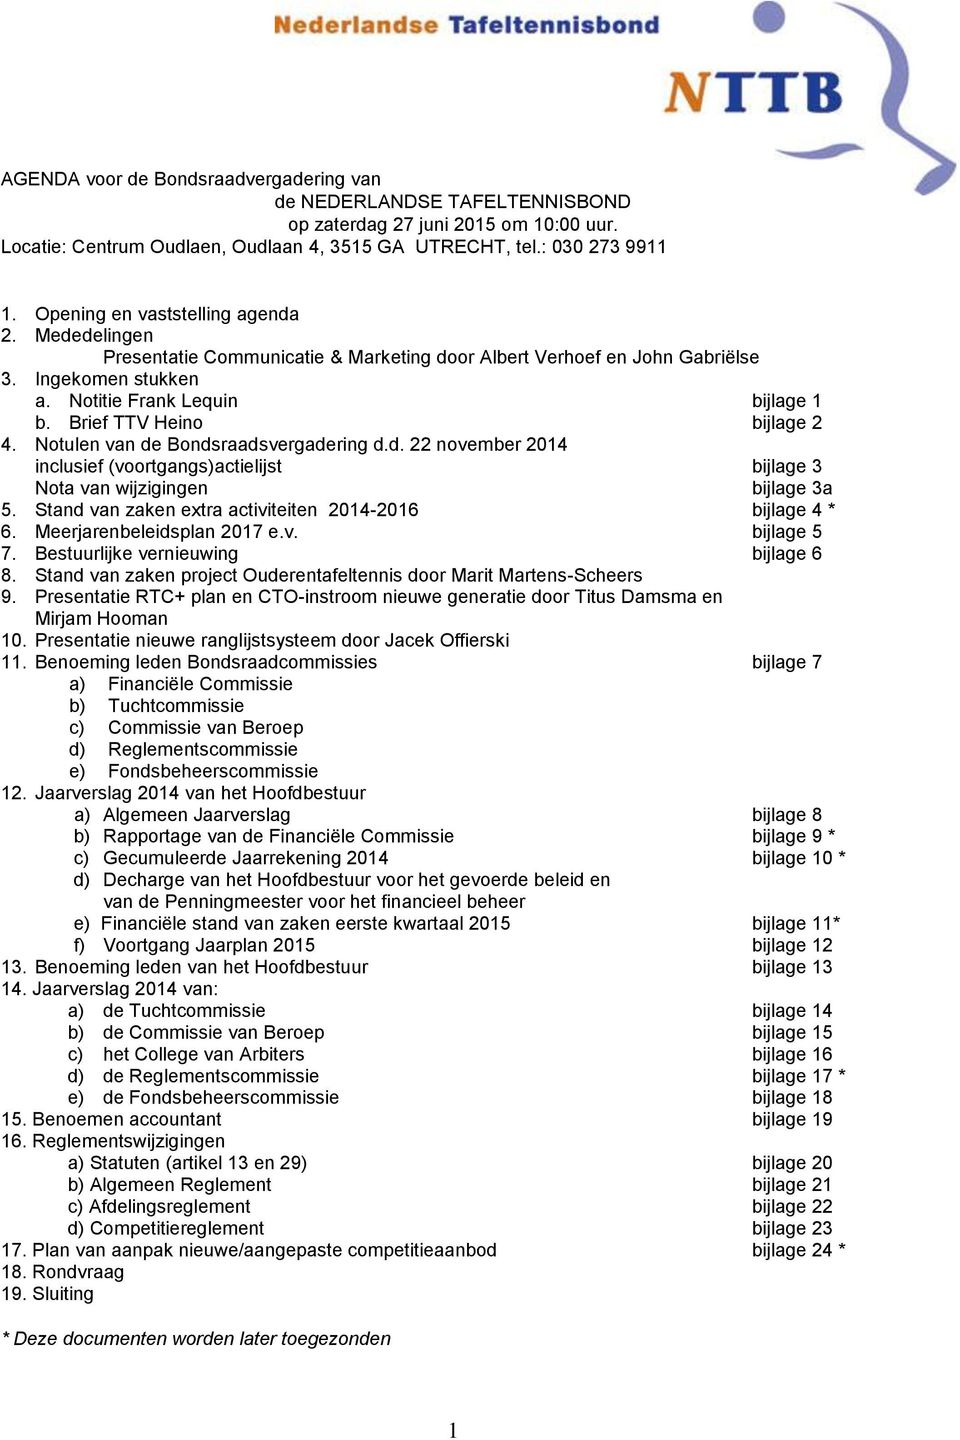 Brief TTV Heino bijlage 2 4. Notulen van de Bondsraadsvergadering d.d. 22 november 2014 inclusief (voortgangs)actielijst bijlage 3 Nota van wijzigingen bijlage 3a 5.